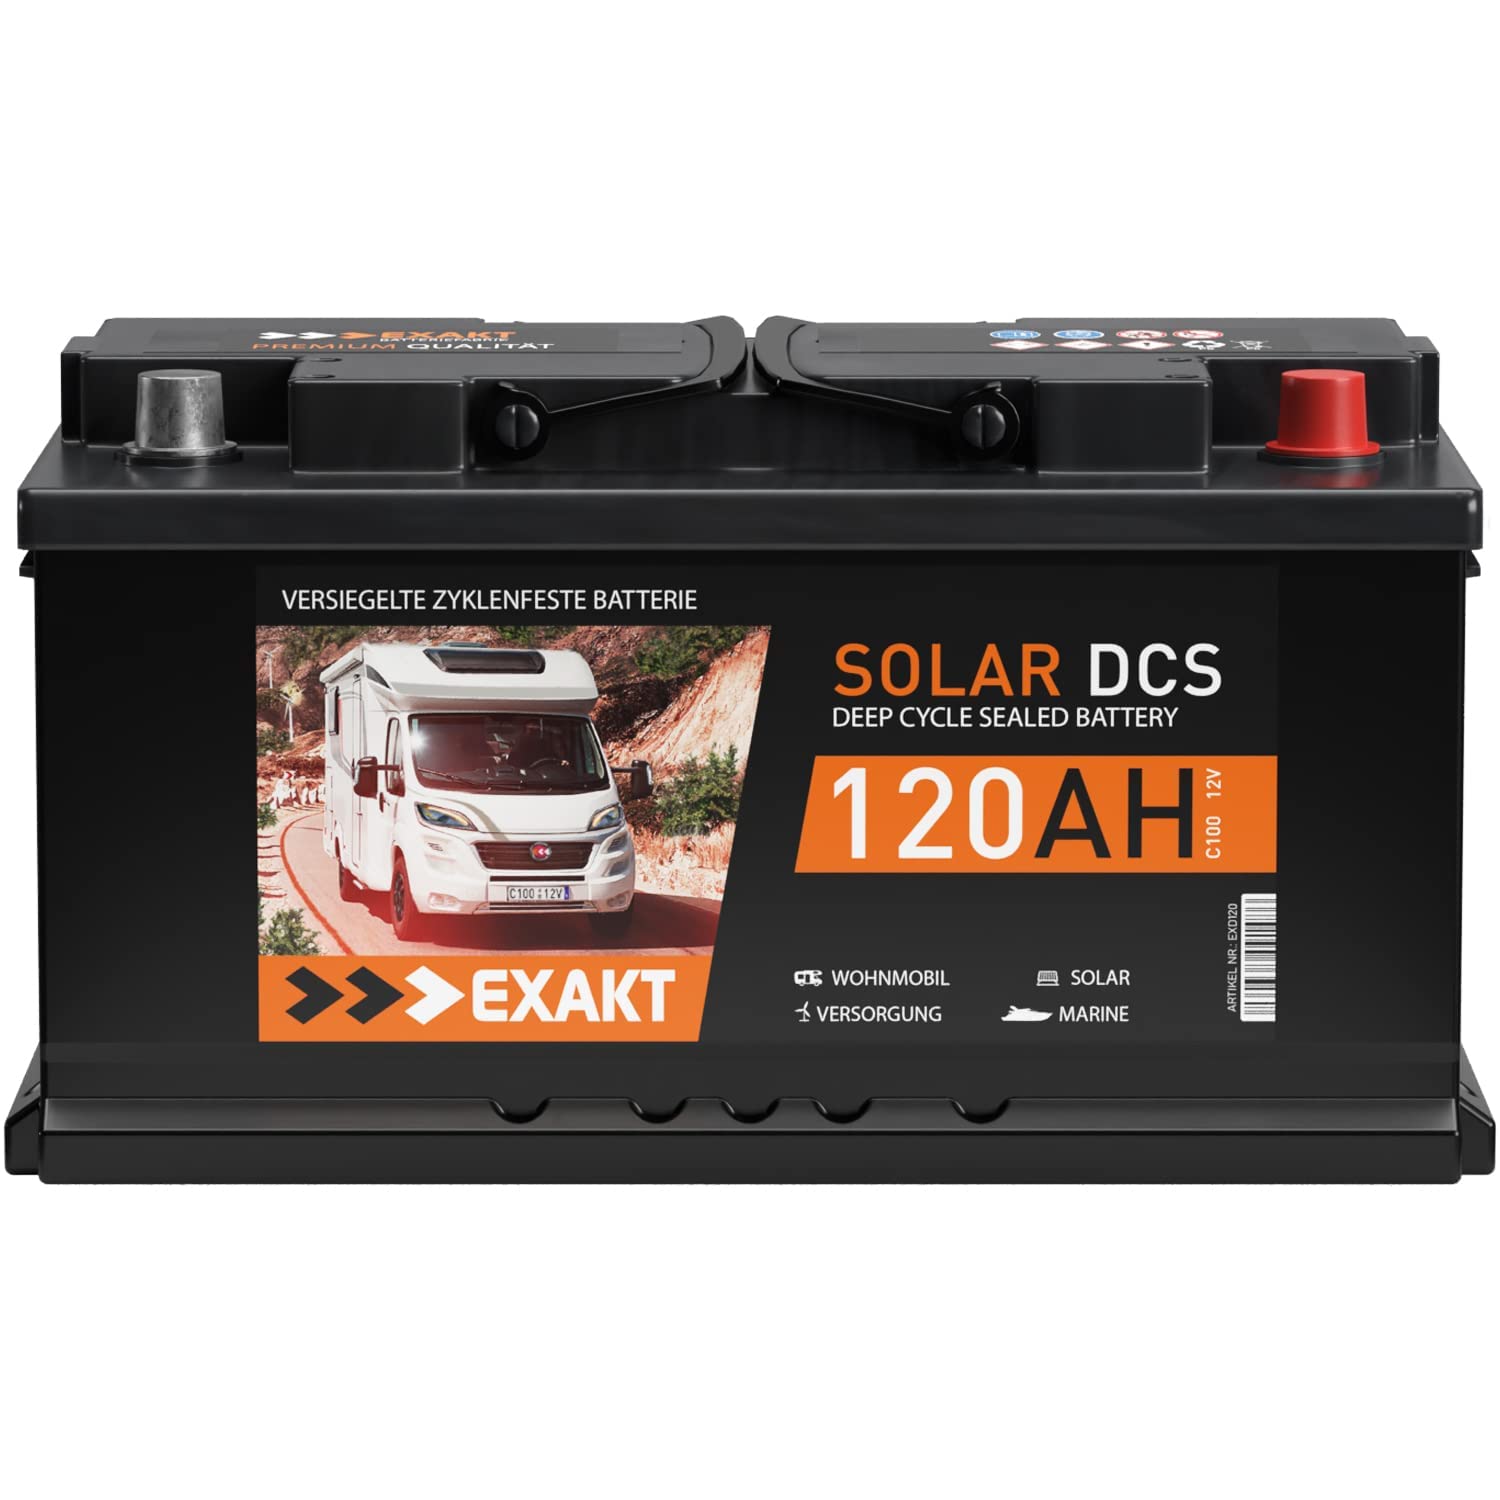 Solarbatterie 120Ah 12V EXAKT DCS Wohnmobil Versorgung Boot Solar Batterie (120AH 12V) von Exakt